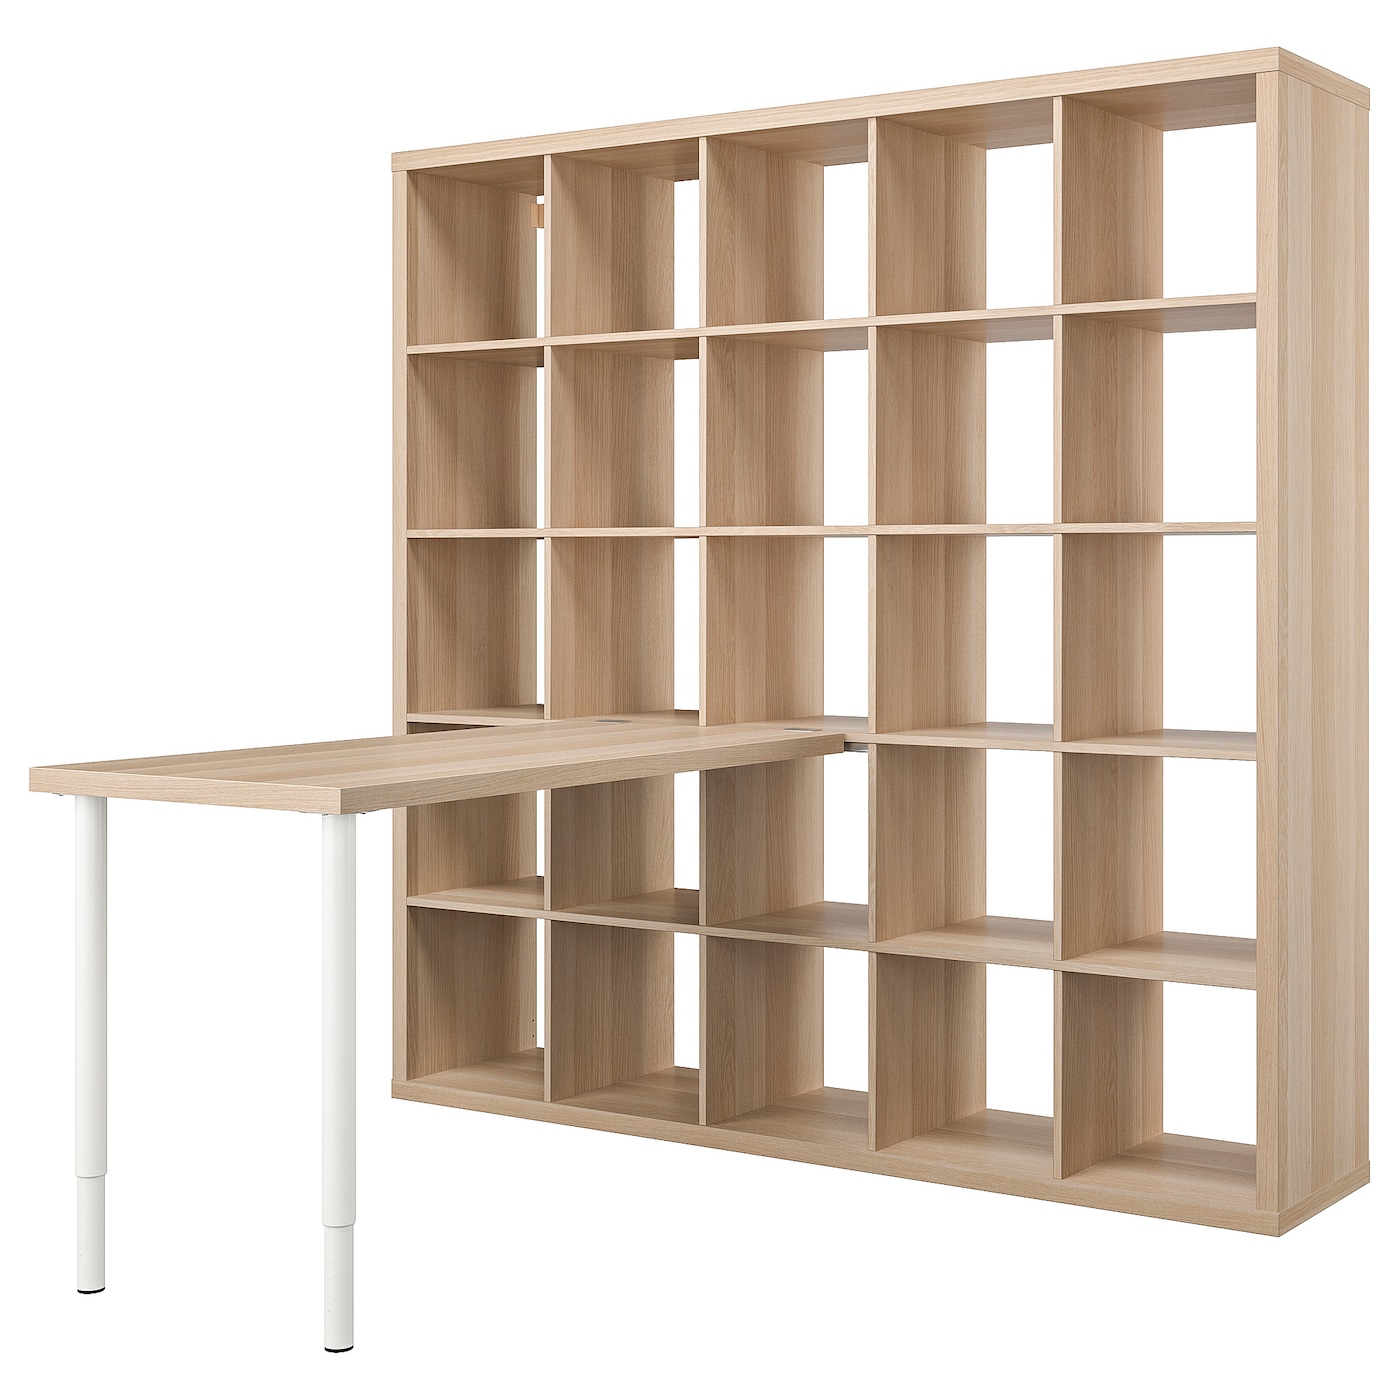 Письменный стол и стеллаж - IKEA KALLAX/LAGKAPTEN, 120х60 см, 182х39х182 см, под беленый дуб/белый, КАЛЛАКС/ЛАГКАПТЕН ИКЕА